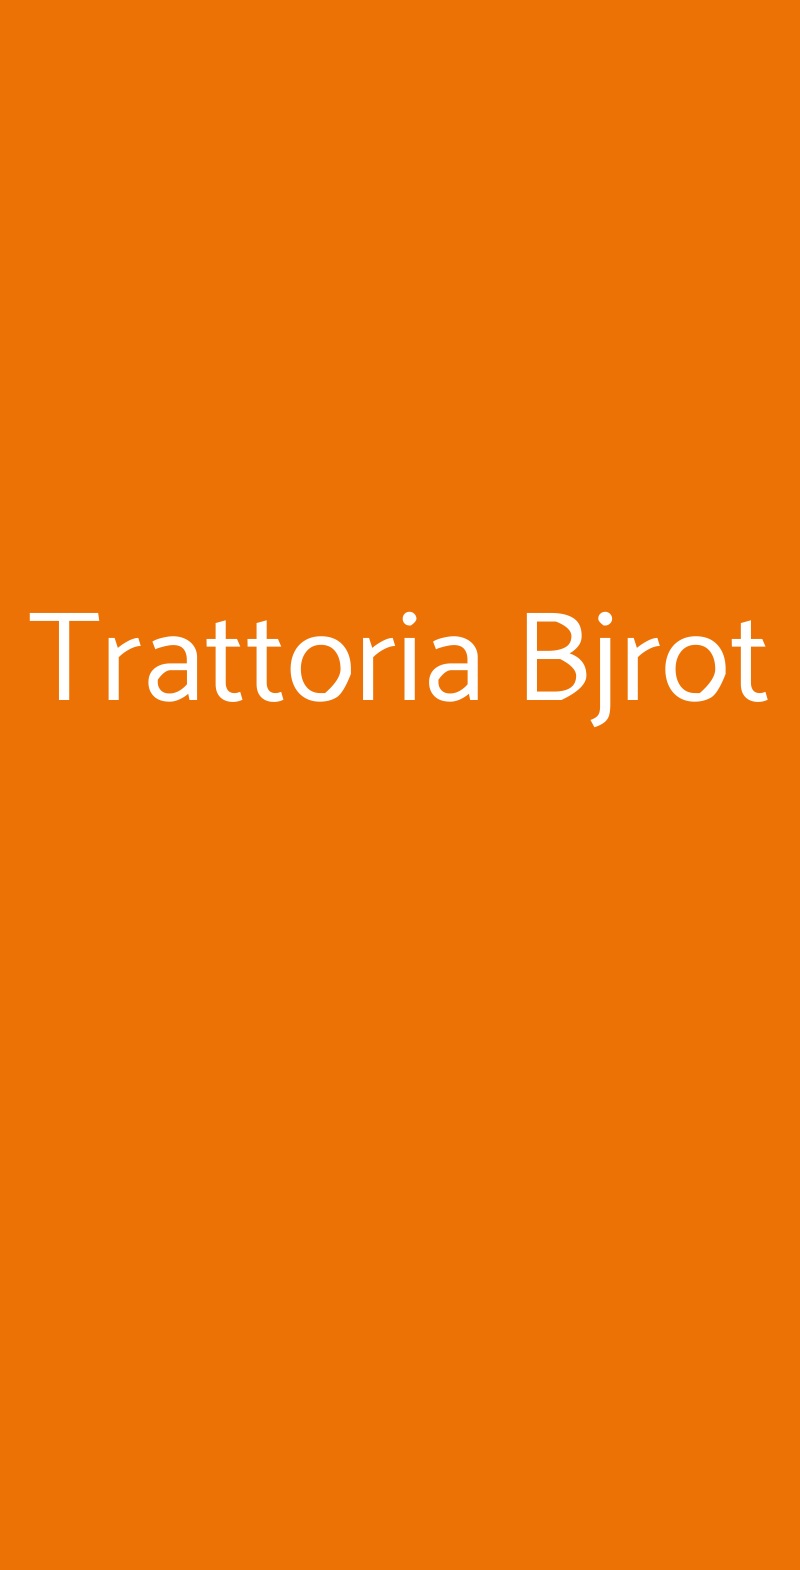 Trattoria Bjrot Monza menù 1 pagina